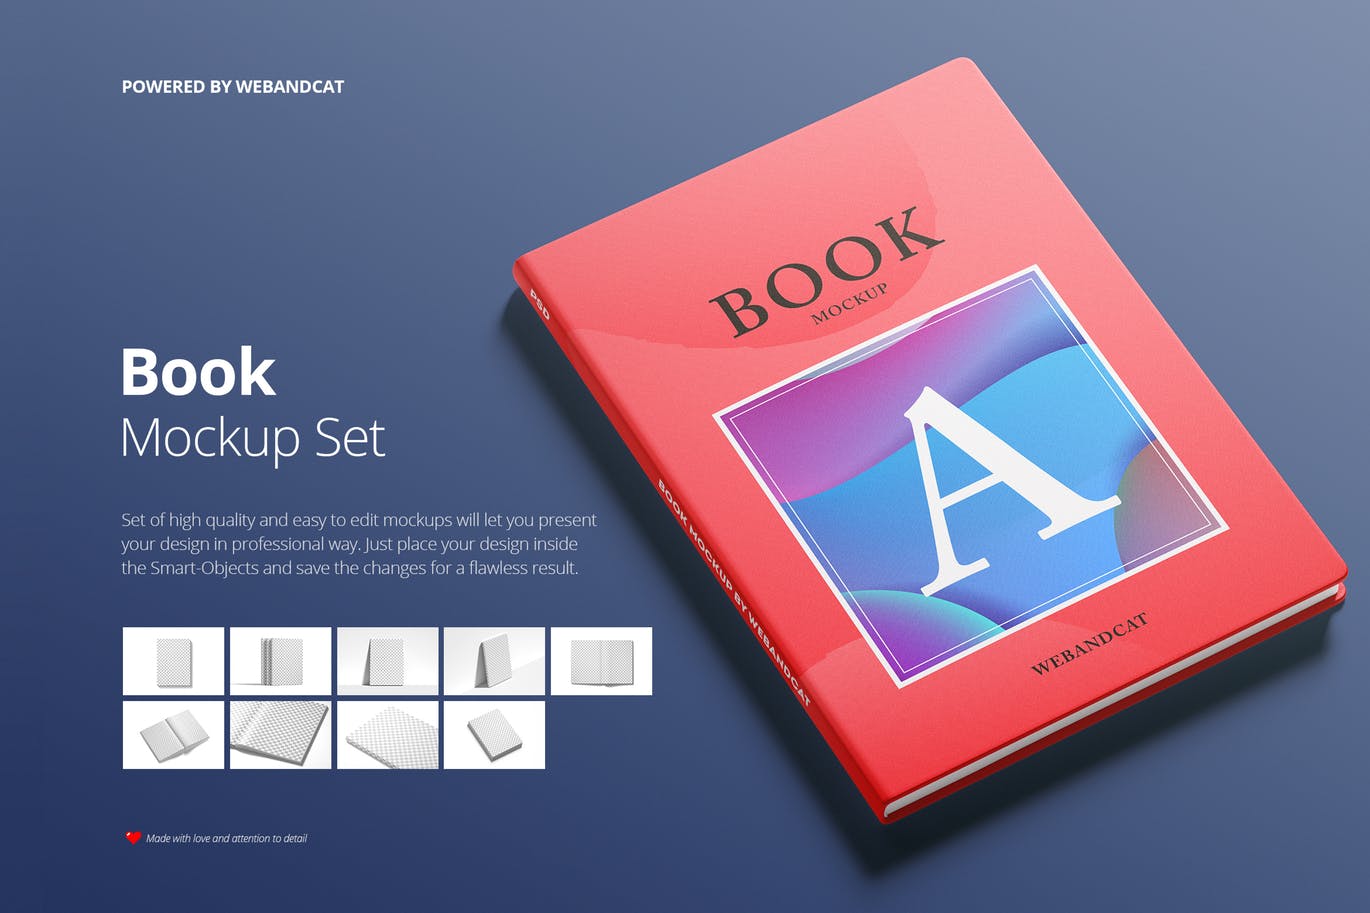 9套高质量且易于编辑记事本/书籍样机素材库精选 Book Mockup Set插图